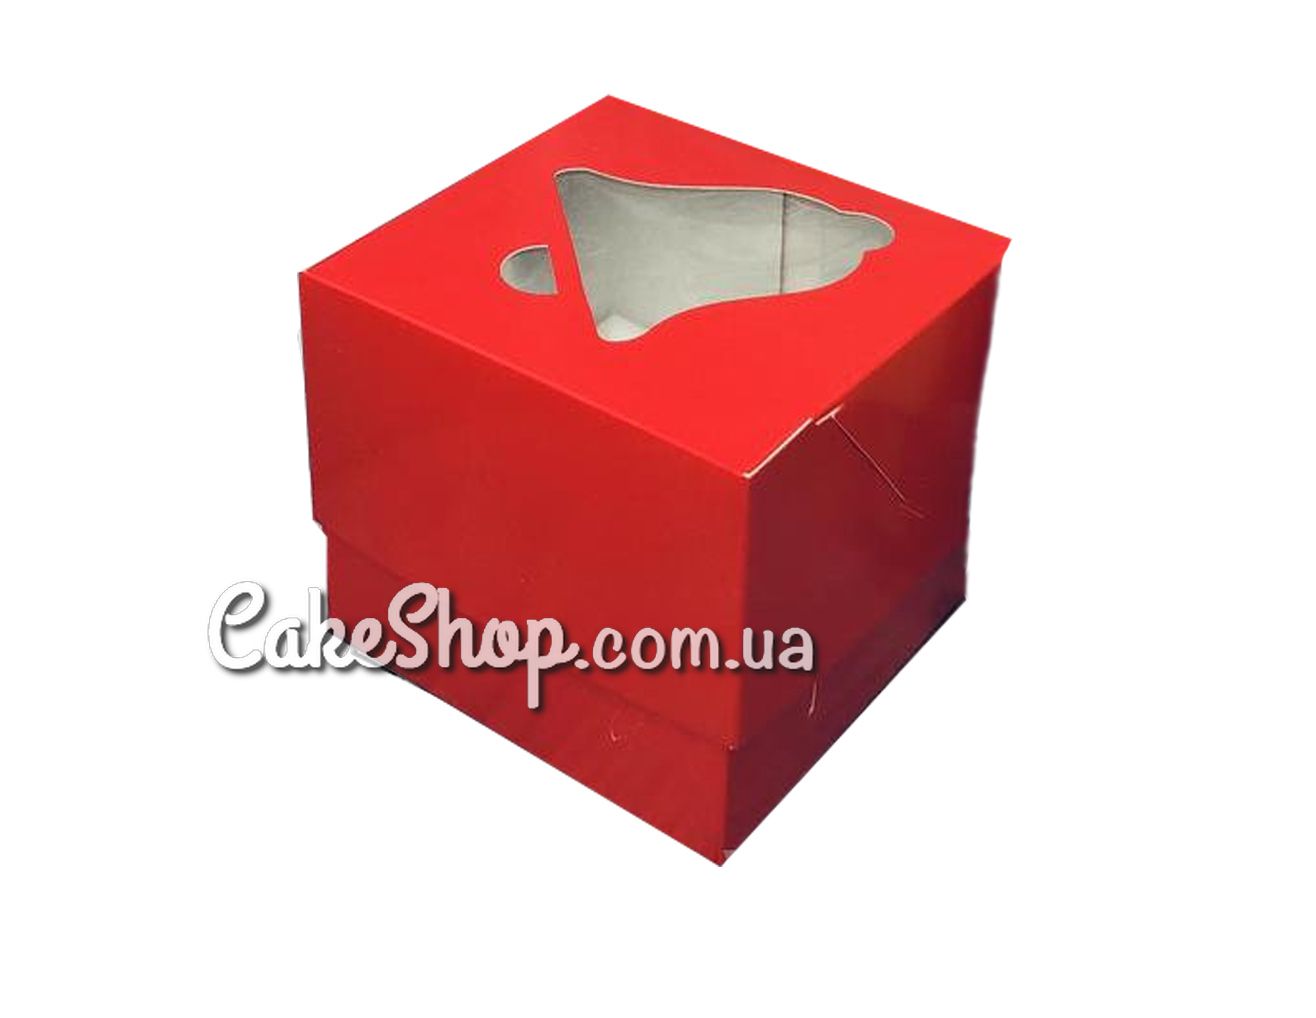 ⋗ Коробка для 1 кекса с колокольчиком Красная, 10х10х9 см купить в Украине ➛ CakeShop.com.ua, фото